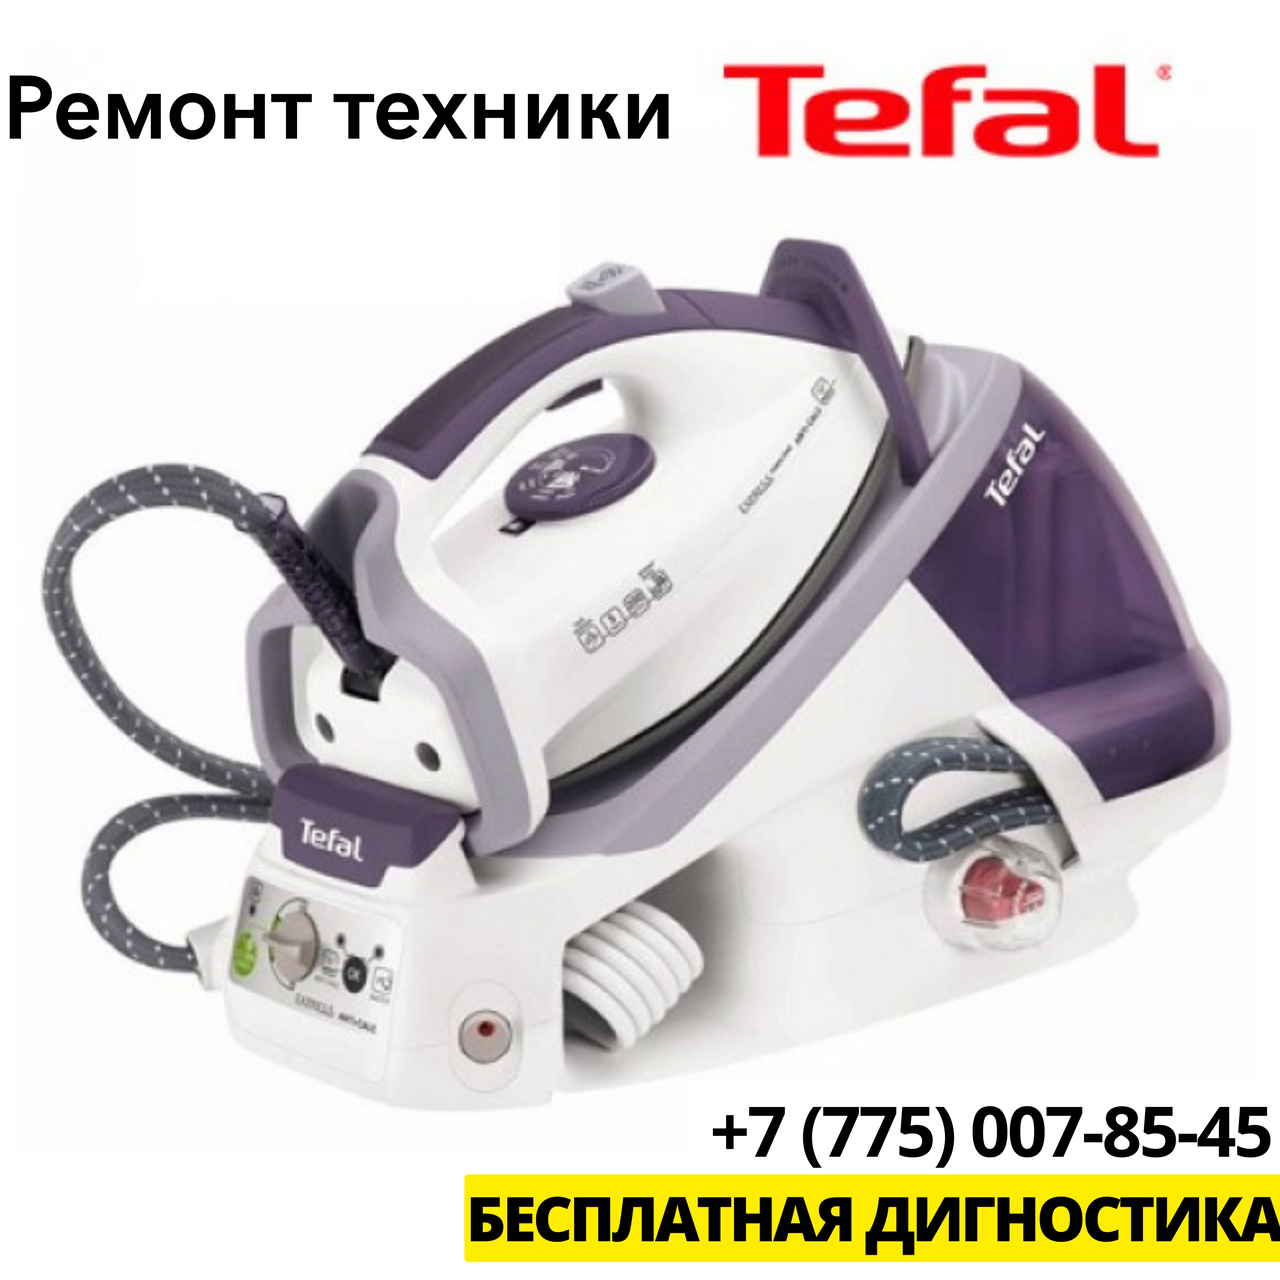 Ремонт бытовой техники Tefal в Алматы